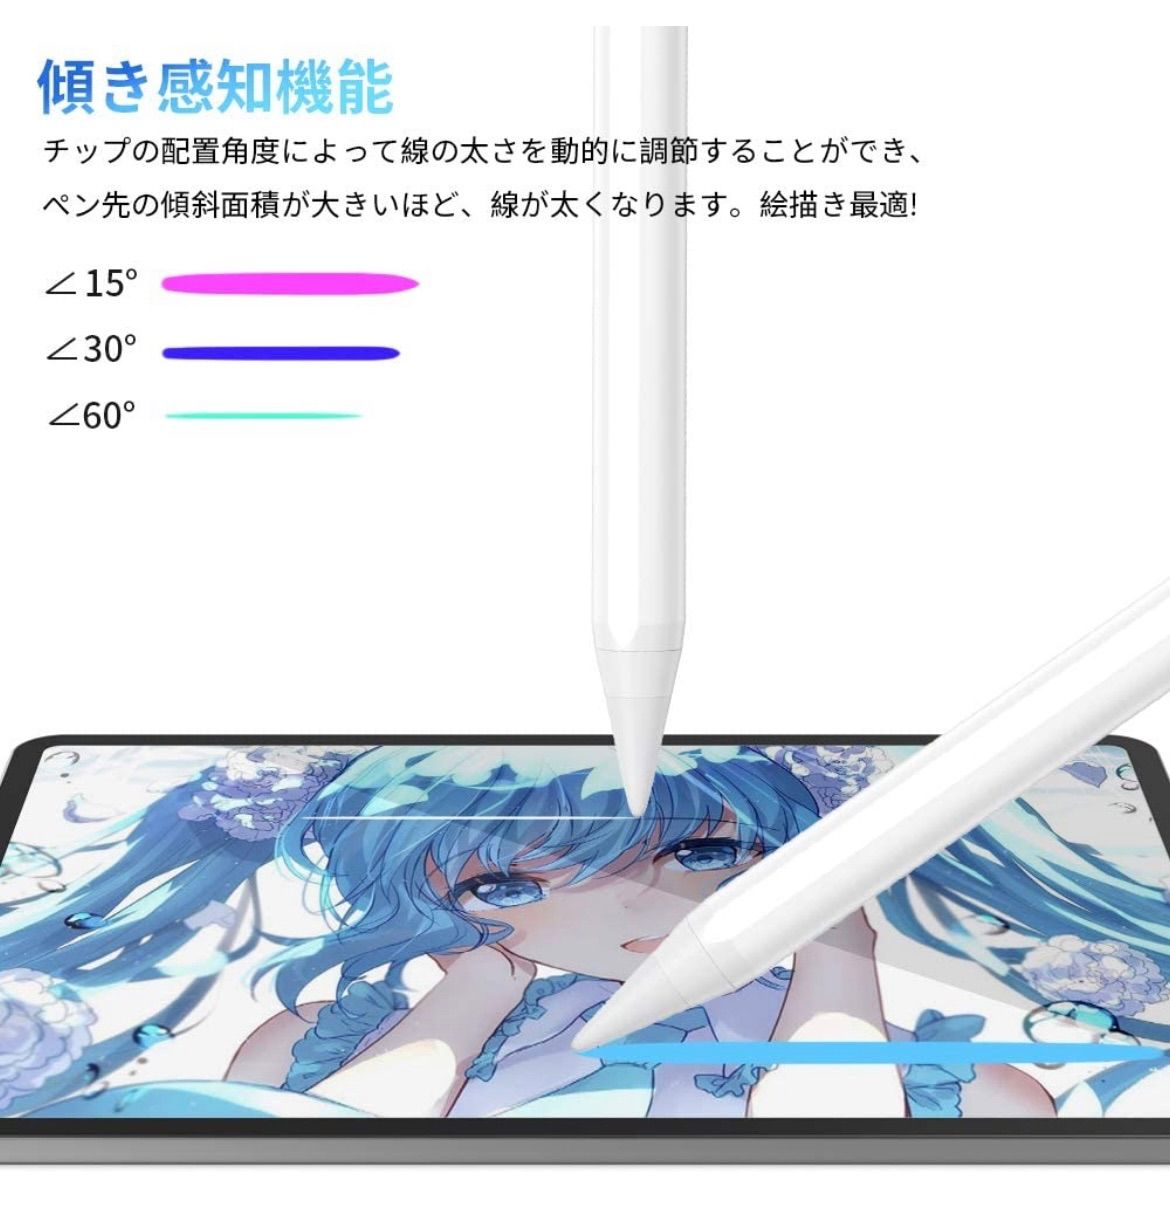 タッチペン iPad ペン JAMJAKE スタイラスペン 極細 高感度 iPad pencil 傾き感知 磁気吸着 誤作動防止機能対応 軽量 耐摩